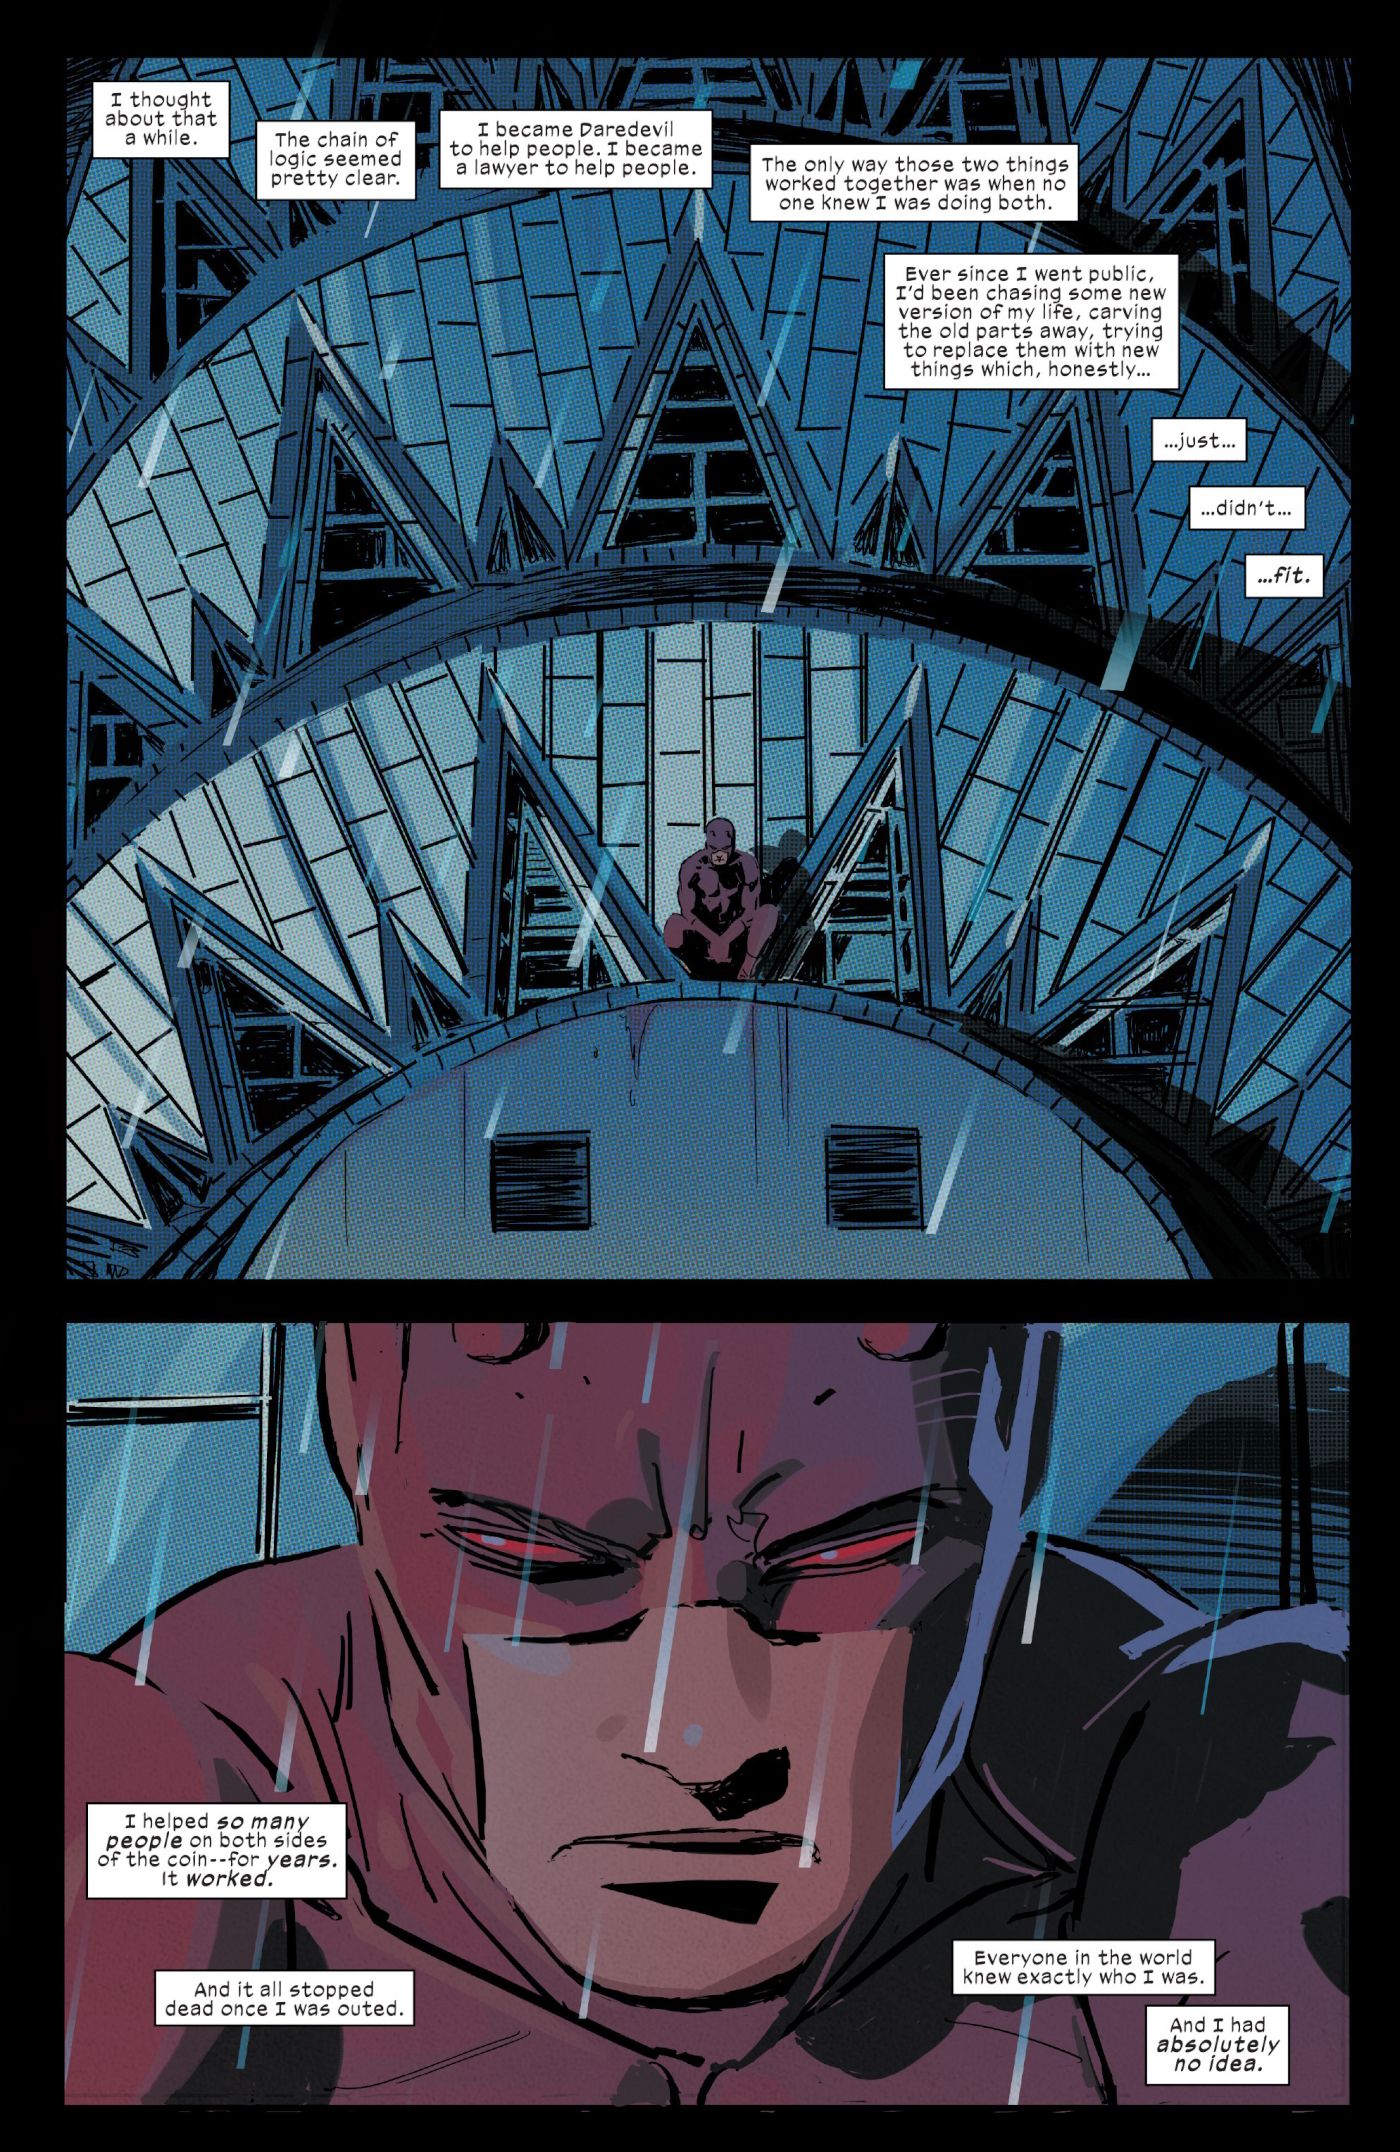 Daredevil #17, Daredevil Contemplates Getting His Secret Identity Back